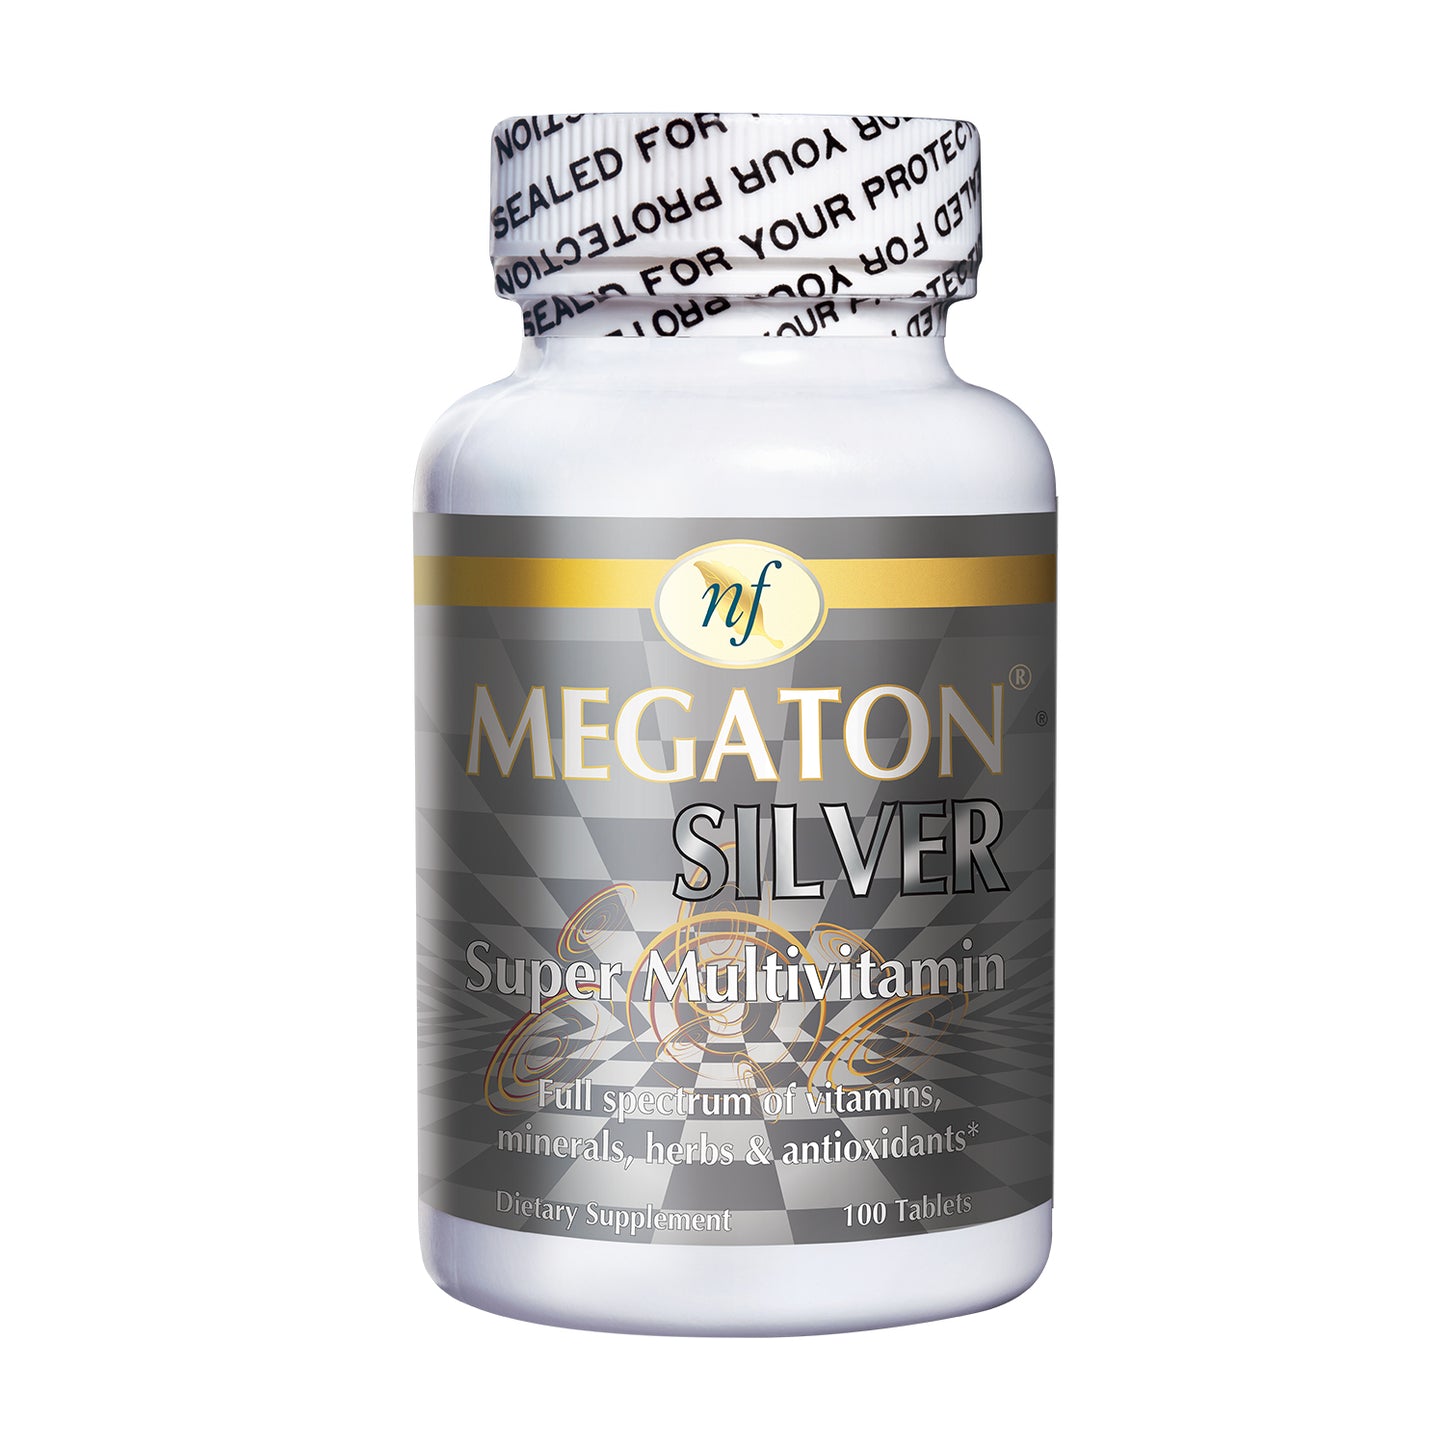 MEGATON SILVER Super Multivitamin